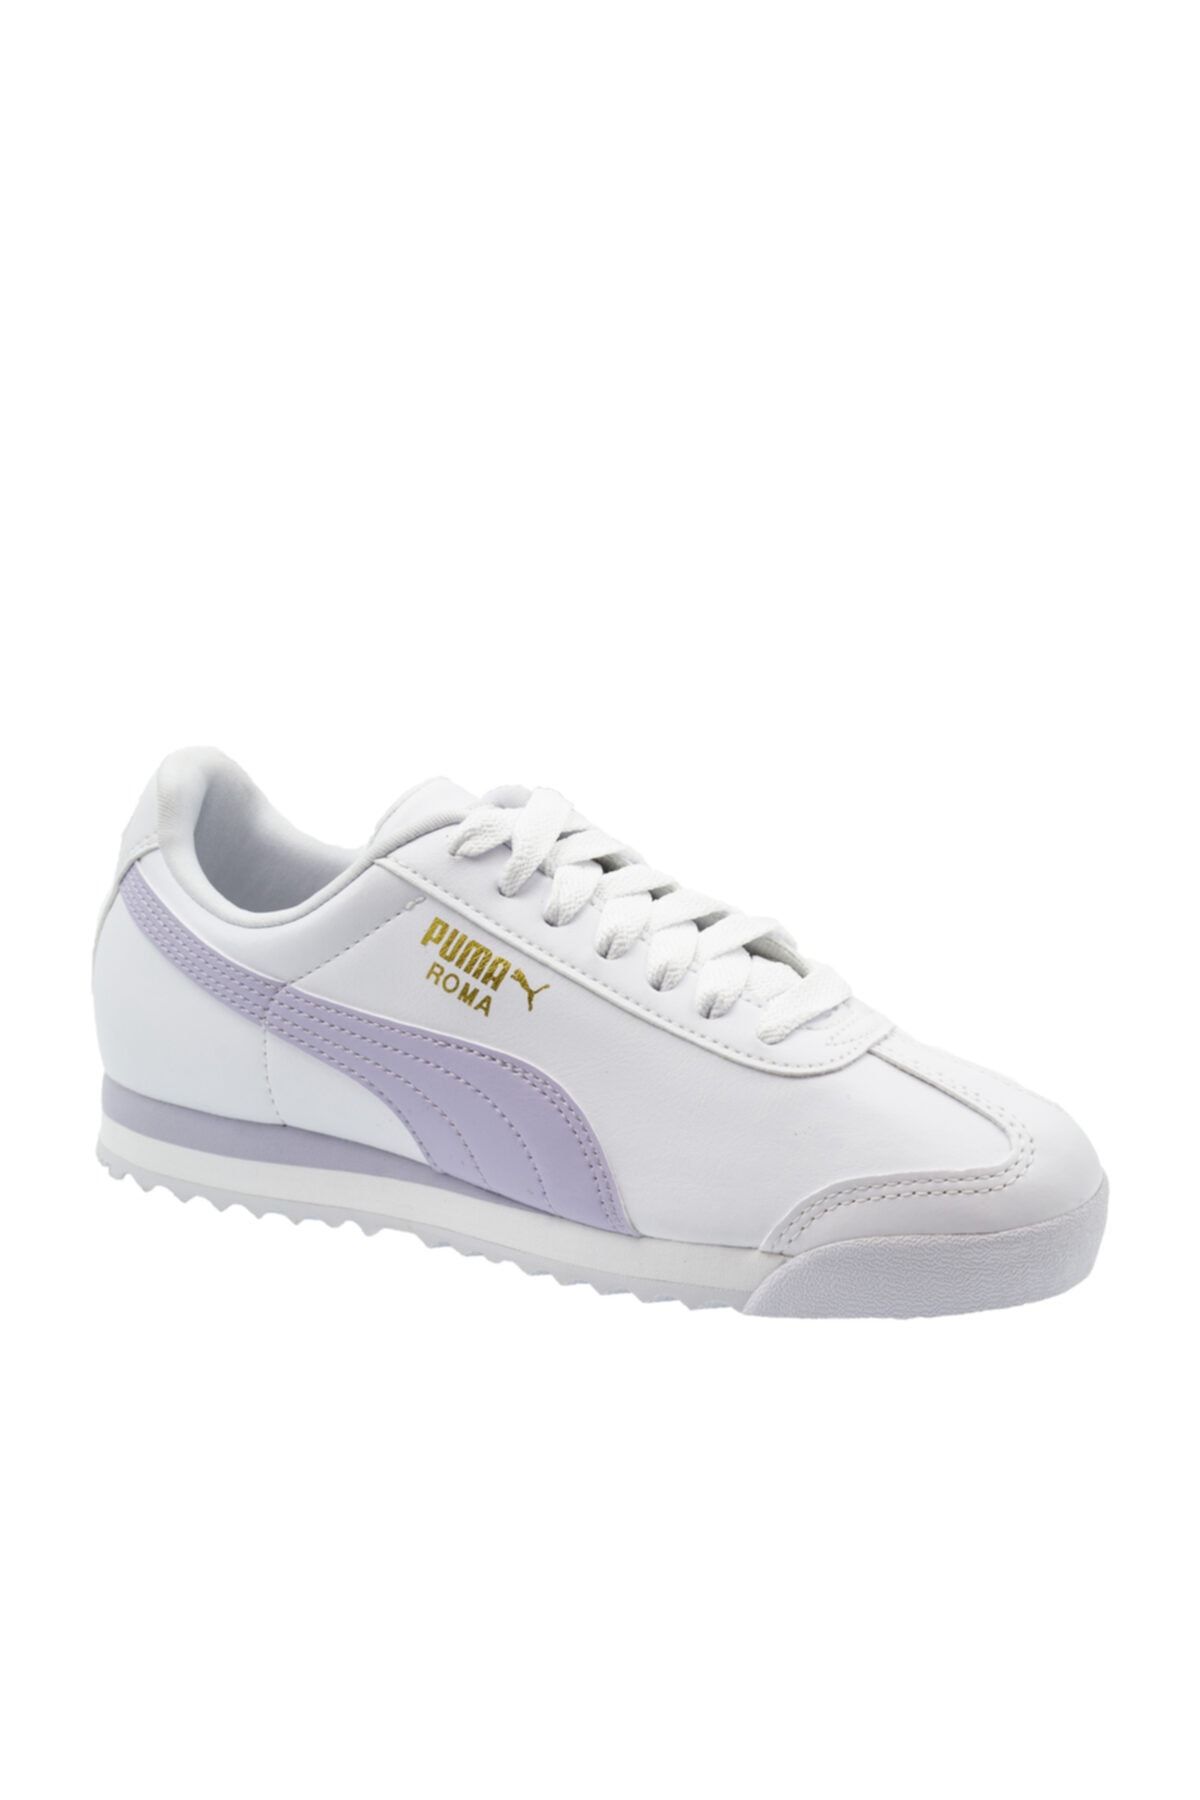 Puma ROMA BASIC Beyaz Kadın Sneaker Ayakkabı 100547437